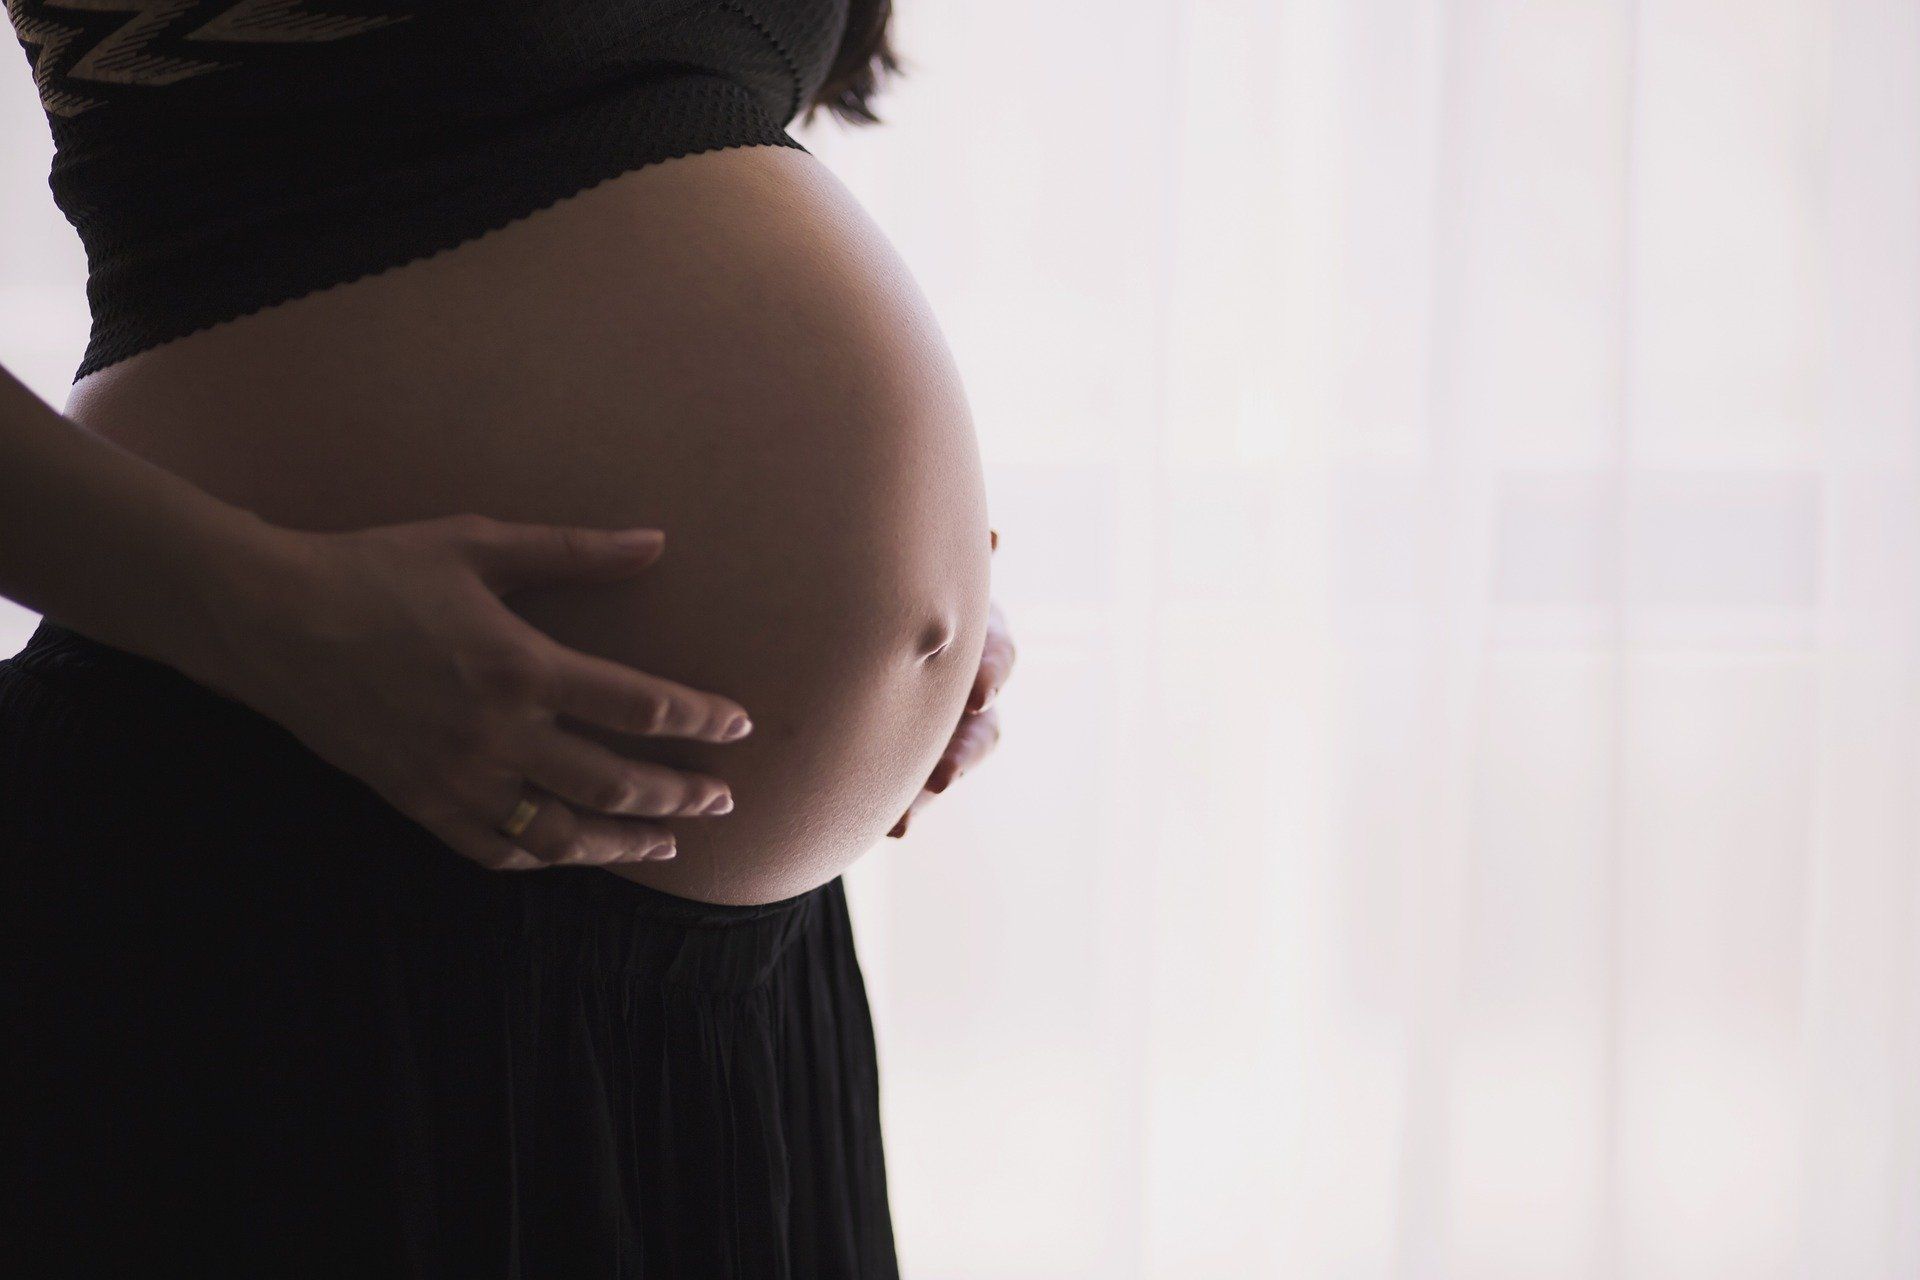 Nadciśnienie ciążowe (zatrucie ciążowe, gestoza) – jak je rozpoznać? Przyczyny, objawy, leczenie